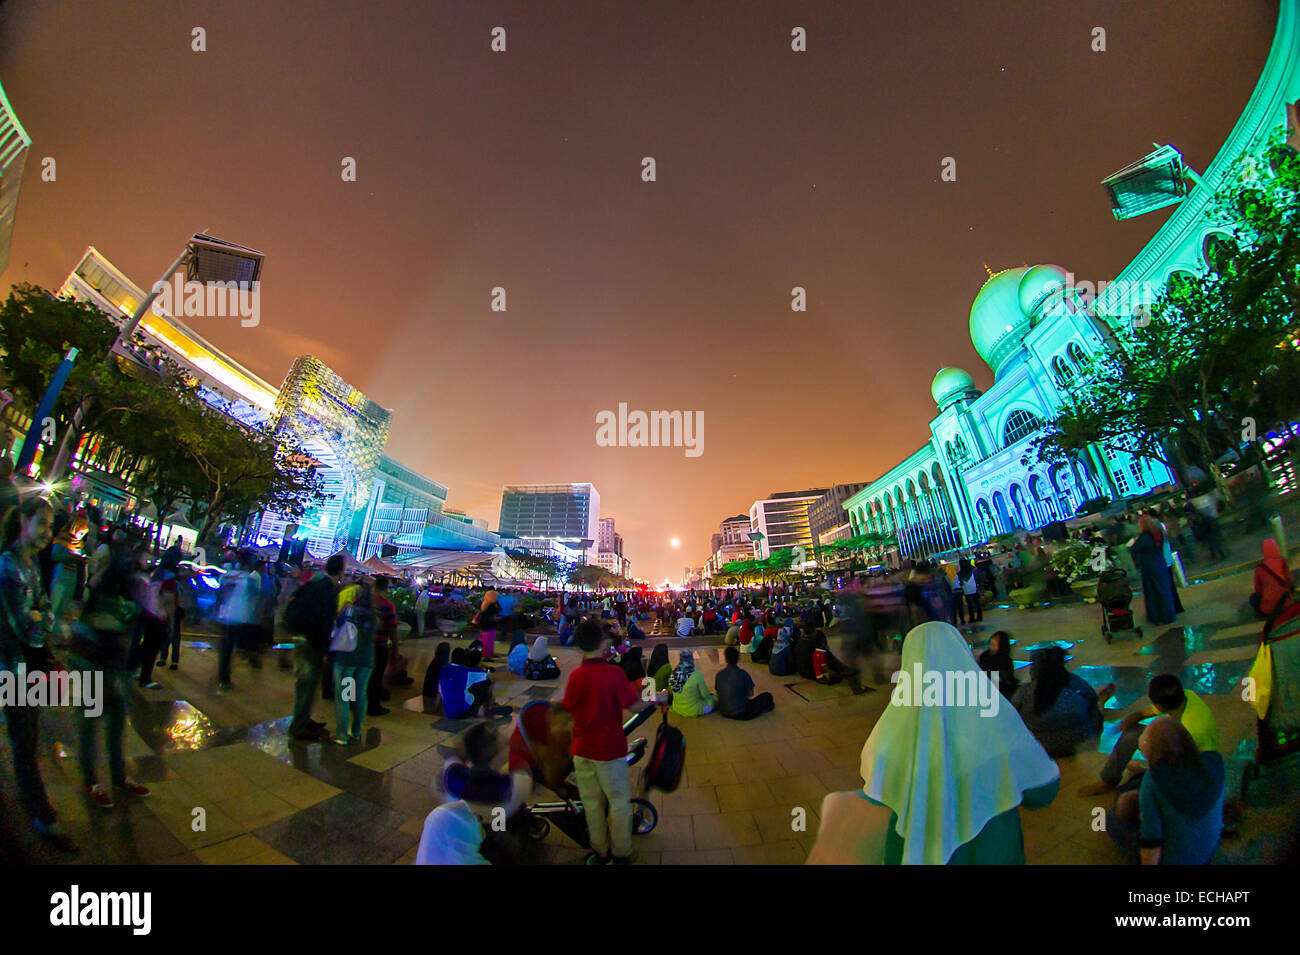 Luz y movimiento Putrajaya 2014 es una proyección de la tecnología moderna y de alta tecnología de la luz y la imagen digital. Foto de stock